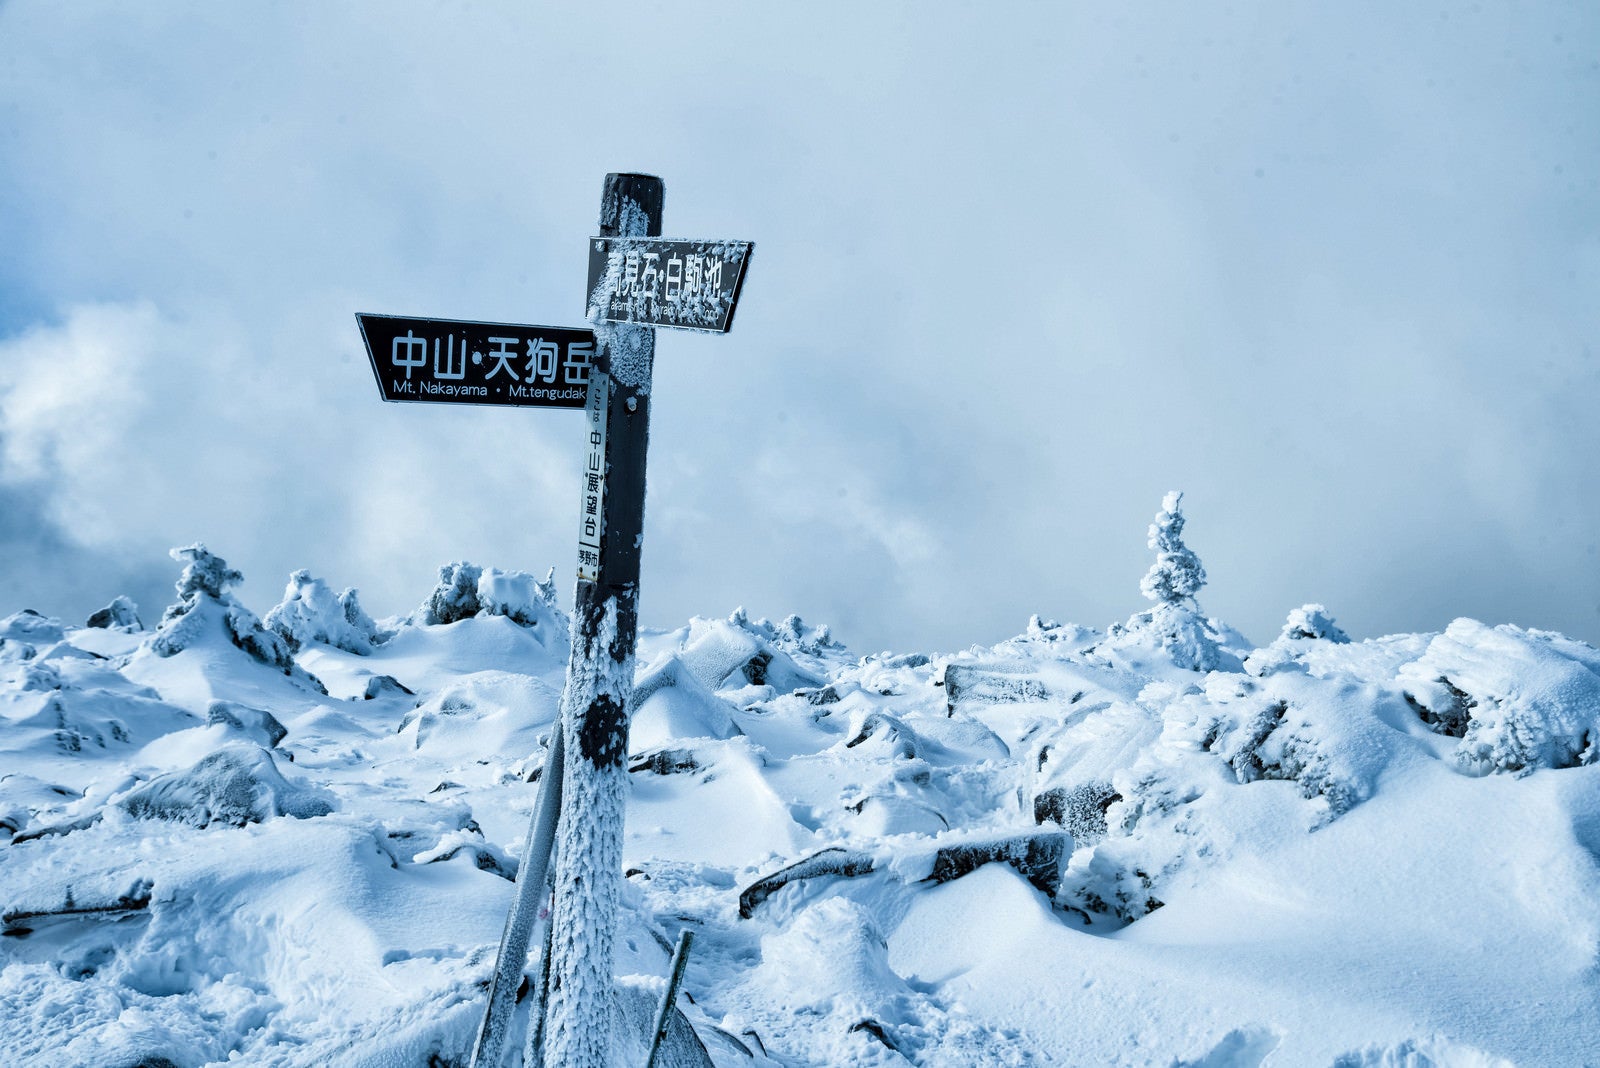 「厳冬期の中山峠展望台にある指導標」の写真